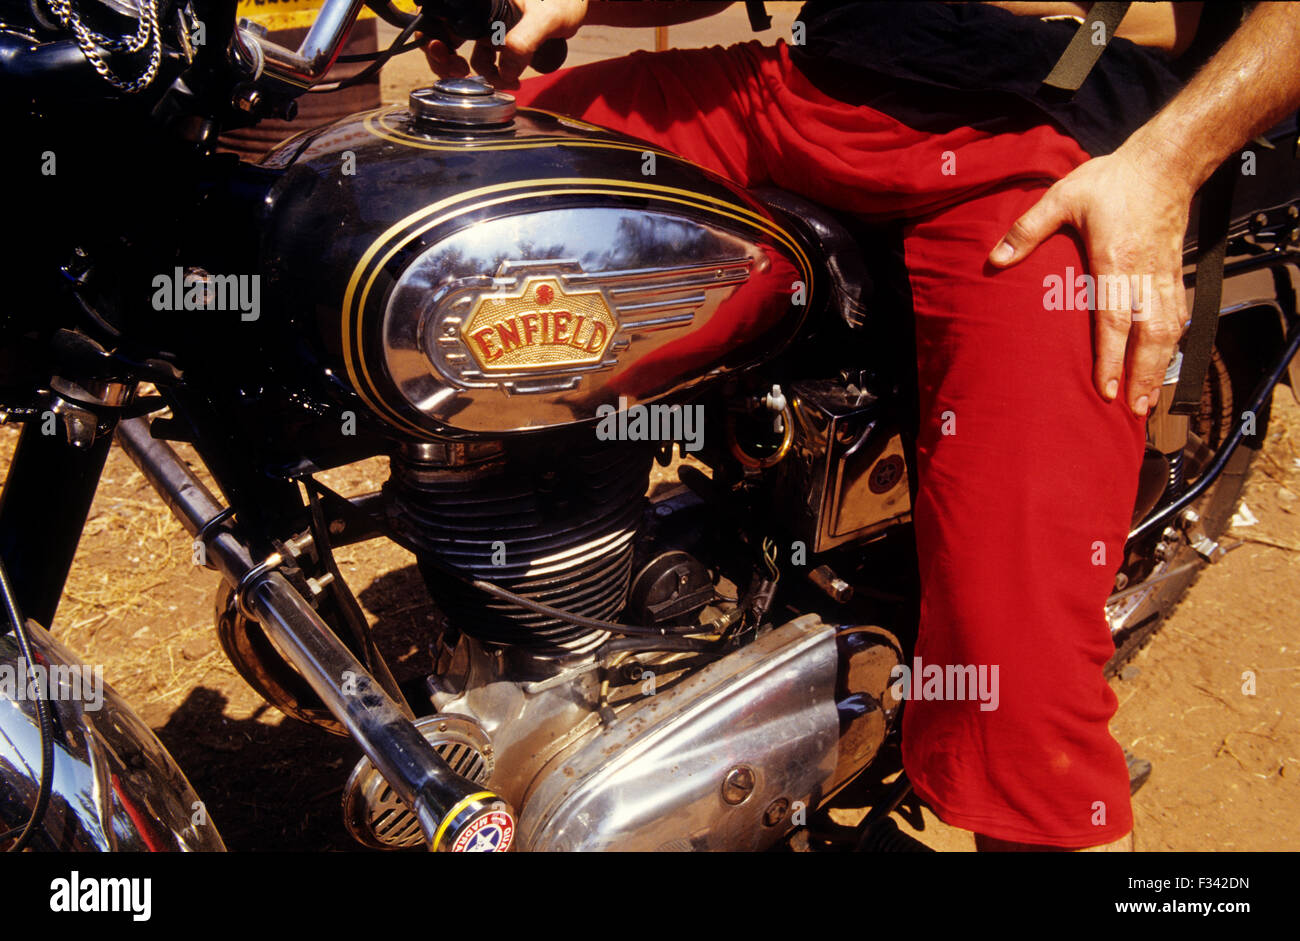 Enfield motorcycle.Goa.India. Stock Photo